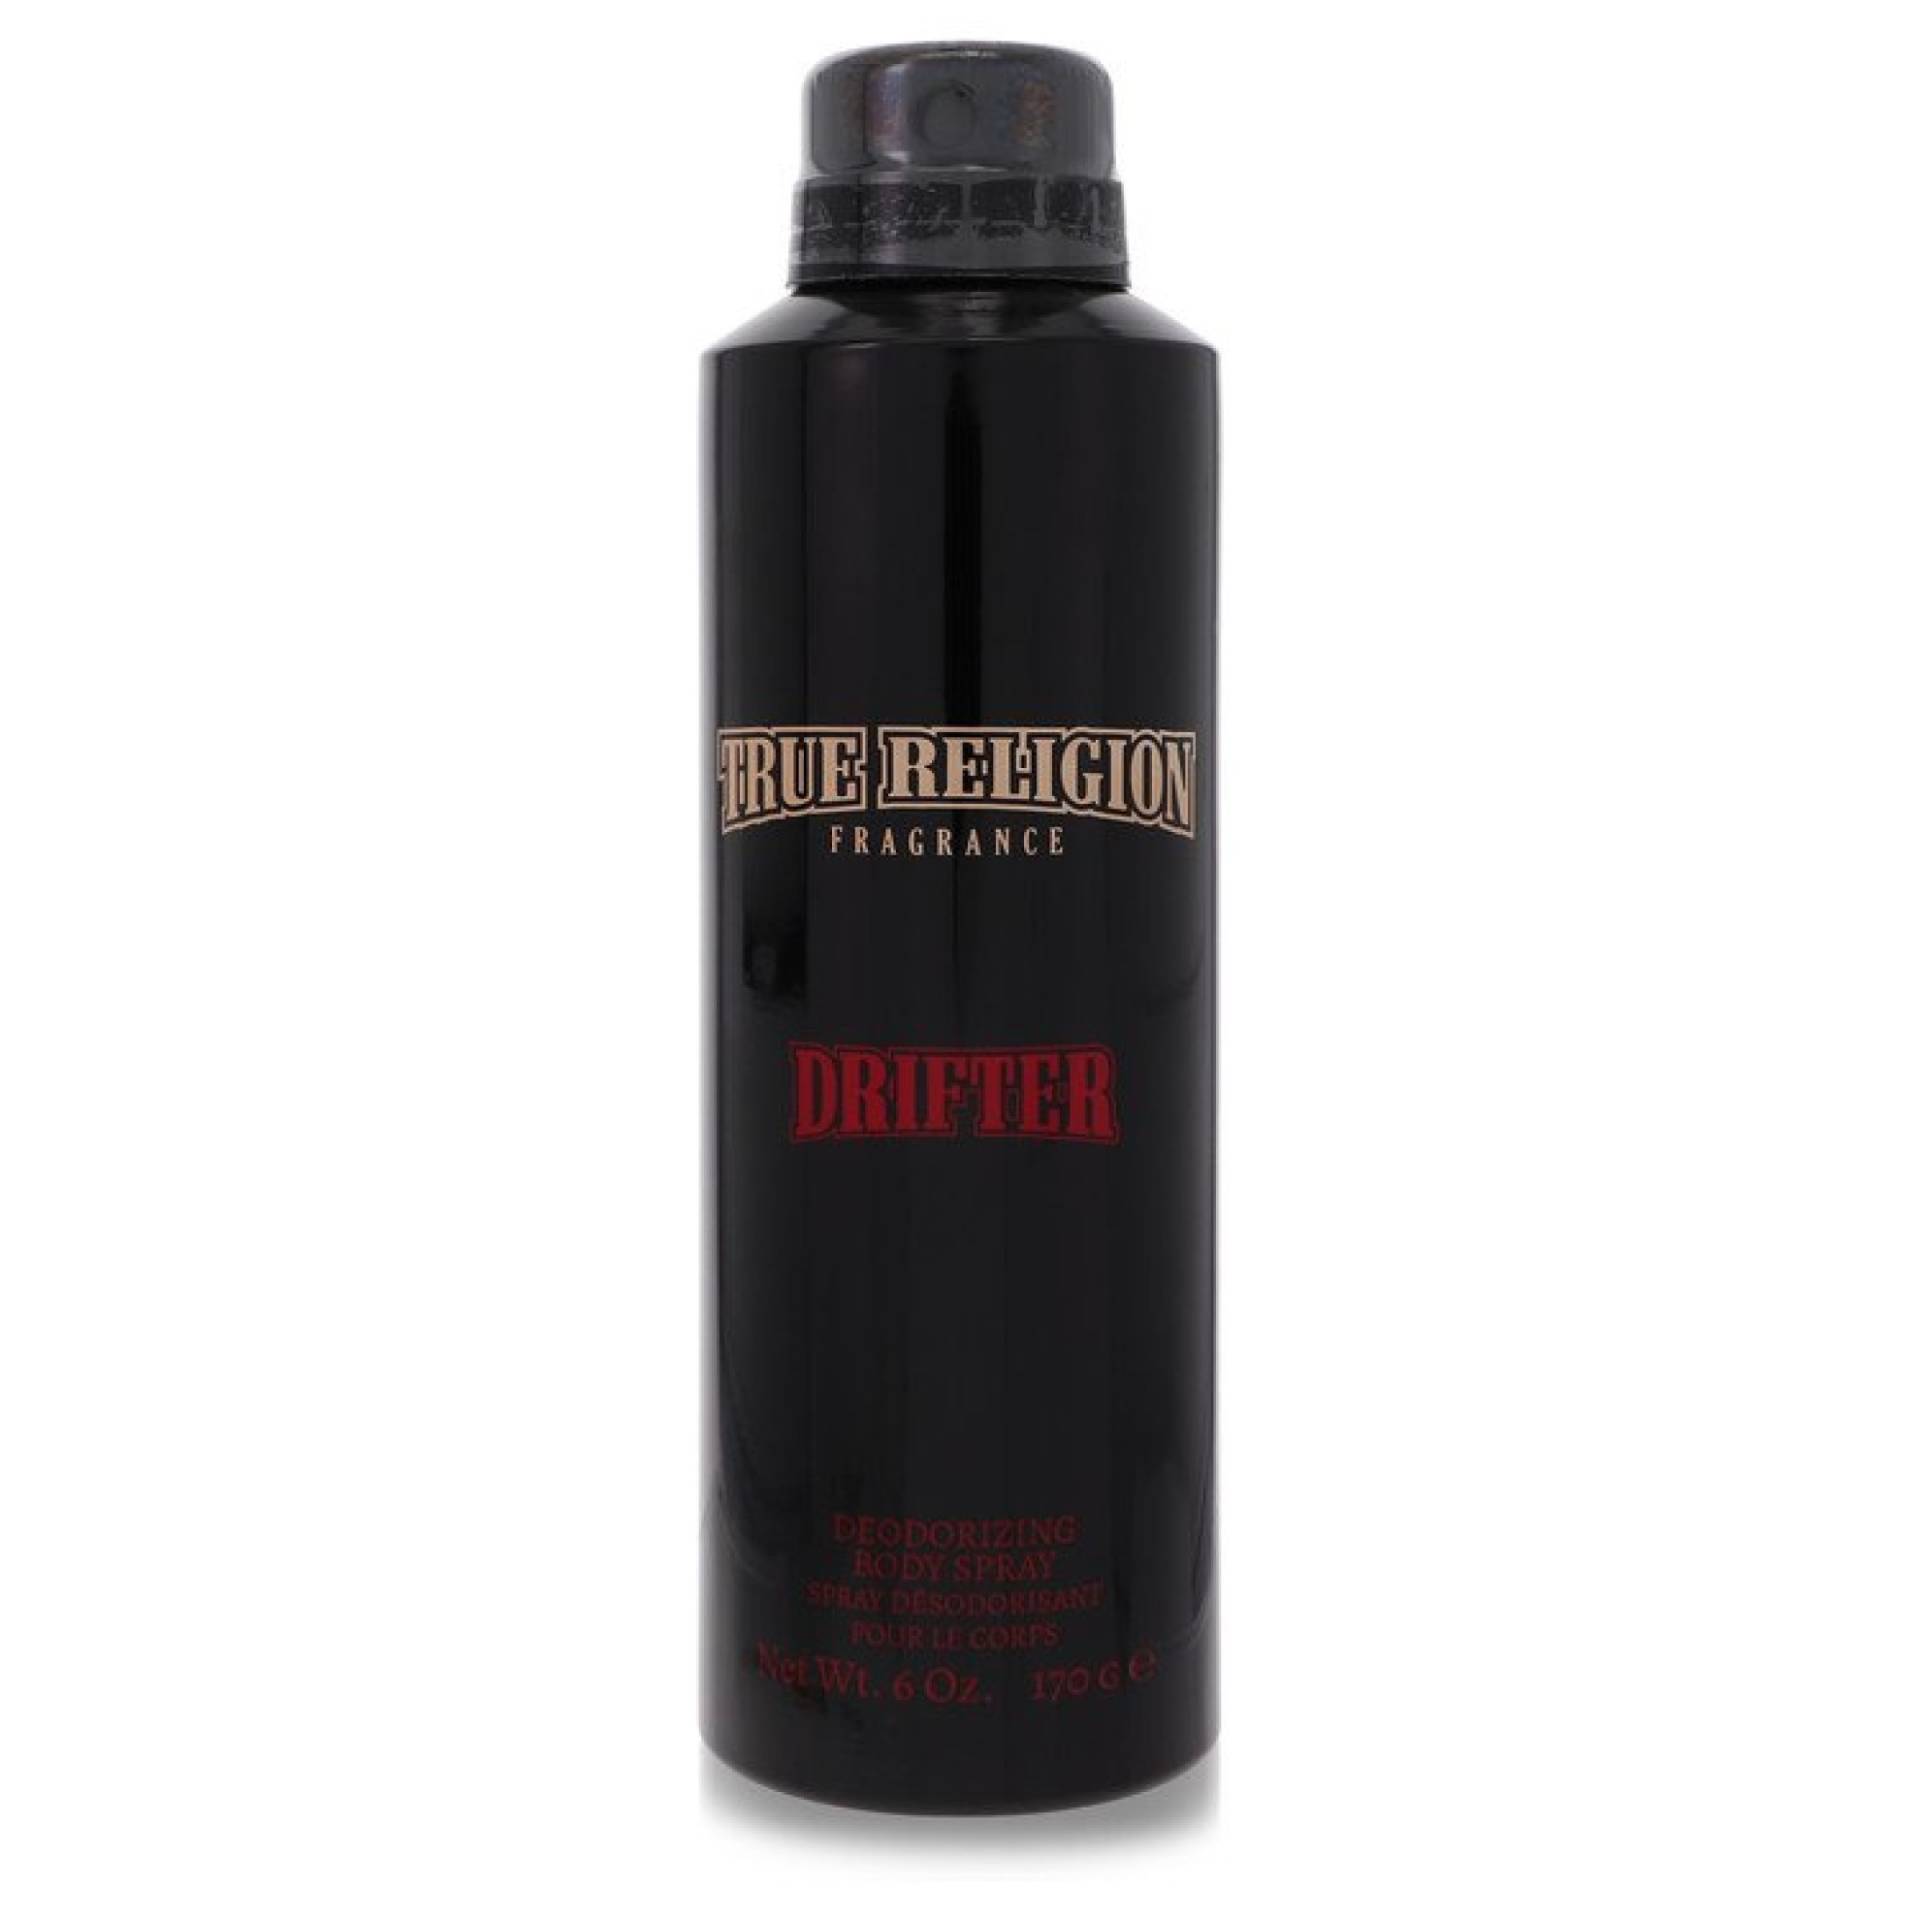 True Religion Drifter Deodorant Spray 177 ml von True Religion